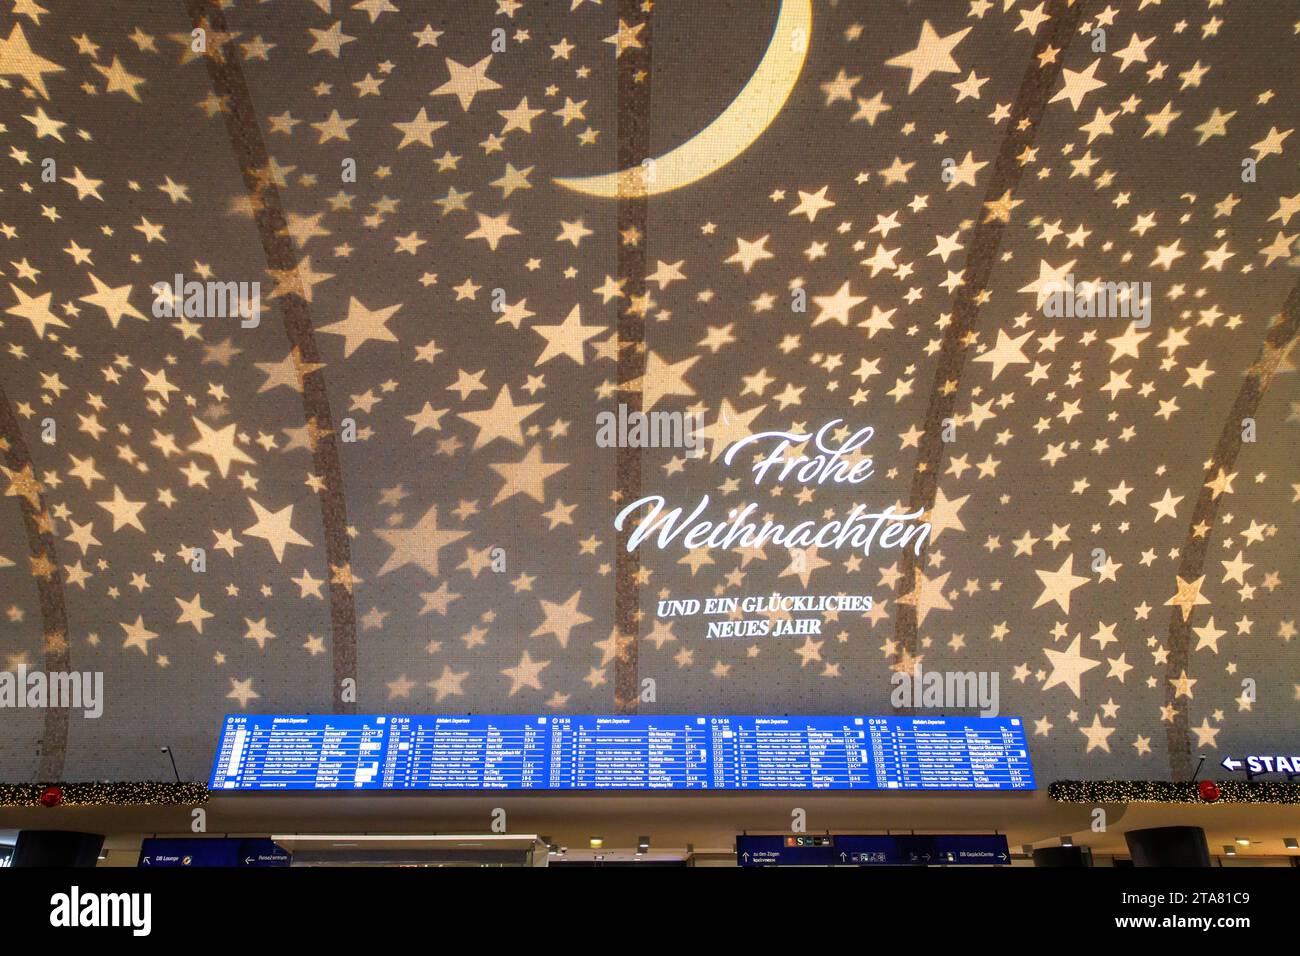 Panneau d'affichage LED de 17 mètres de long dans le hall d'entrée de la gare principale de Cologne, plafond éclairé de Noël, Allemagne. 17 mètres lange LED Anzeig Banque D'Images